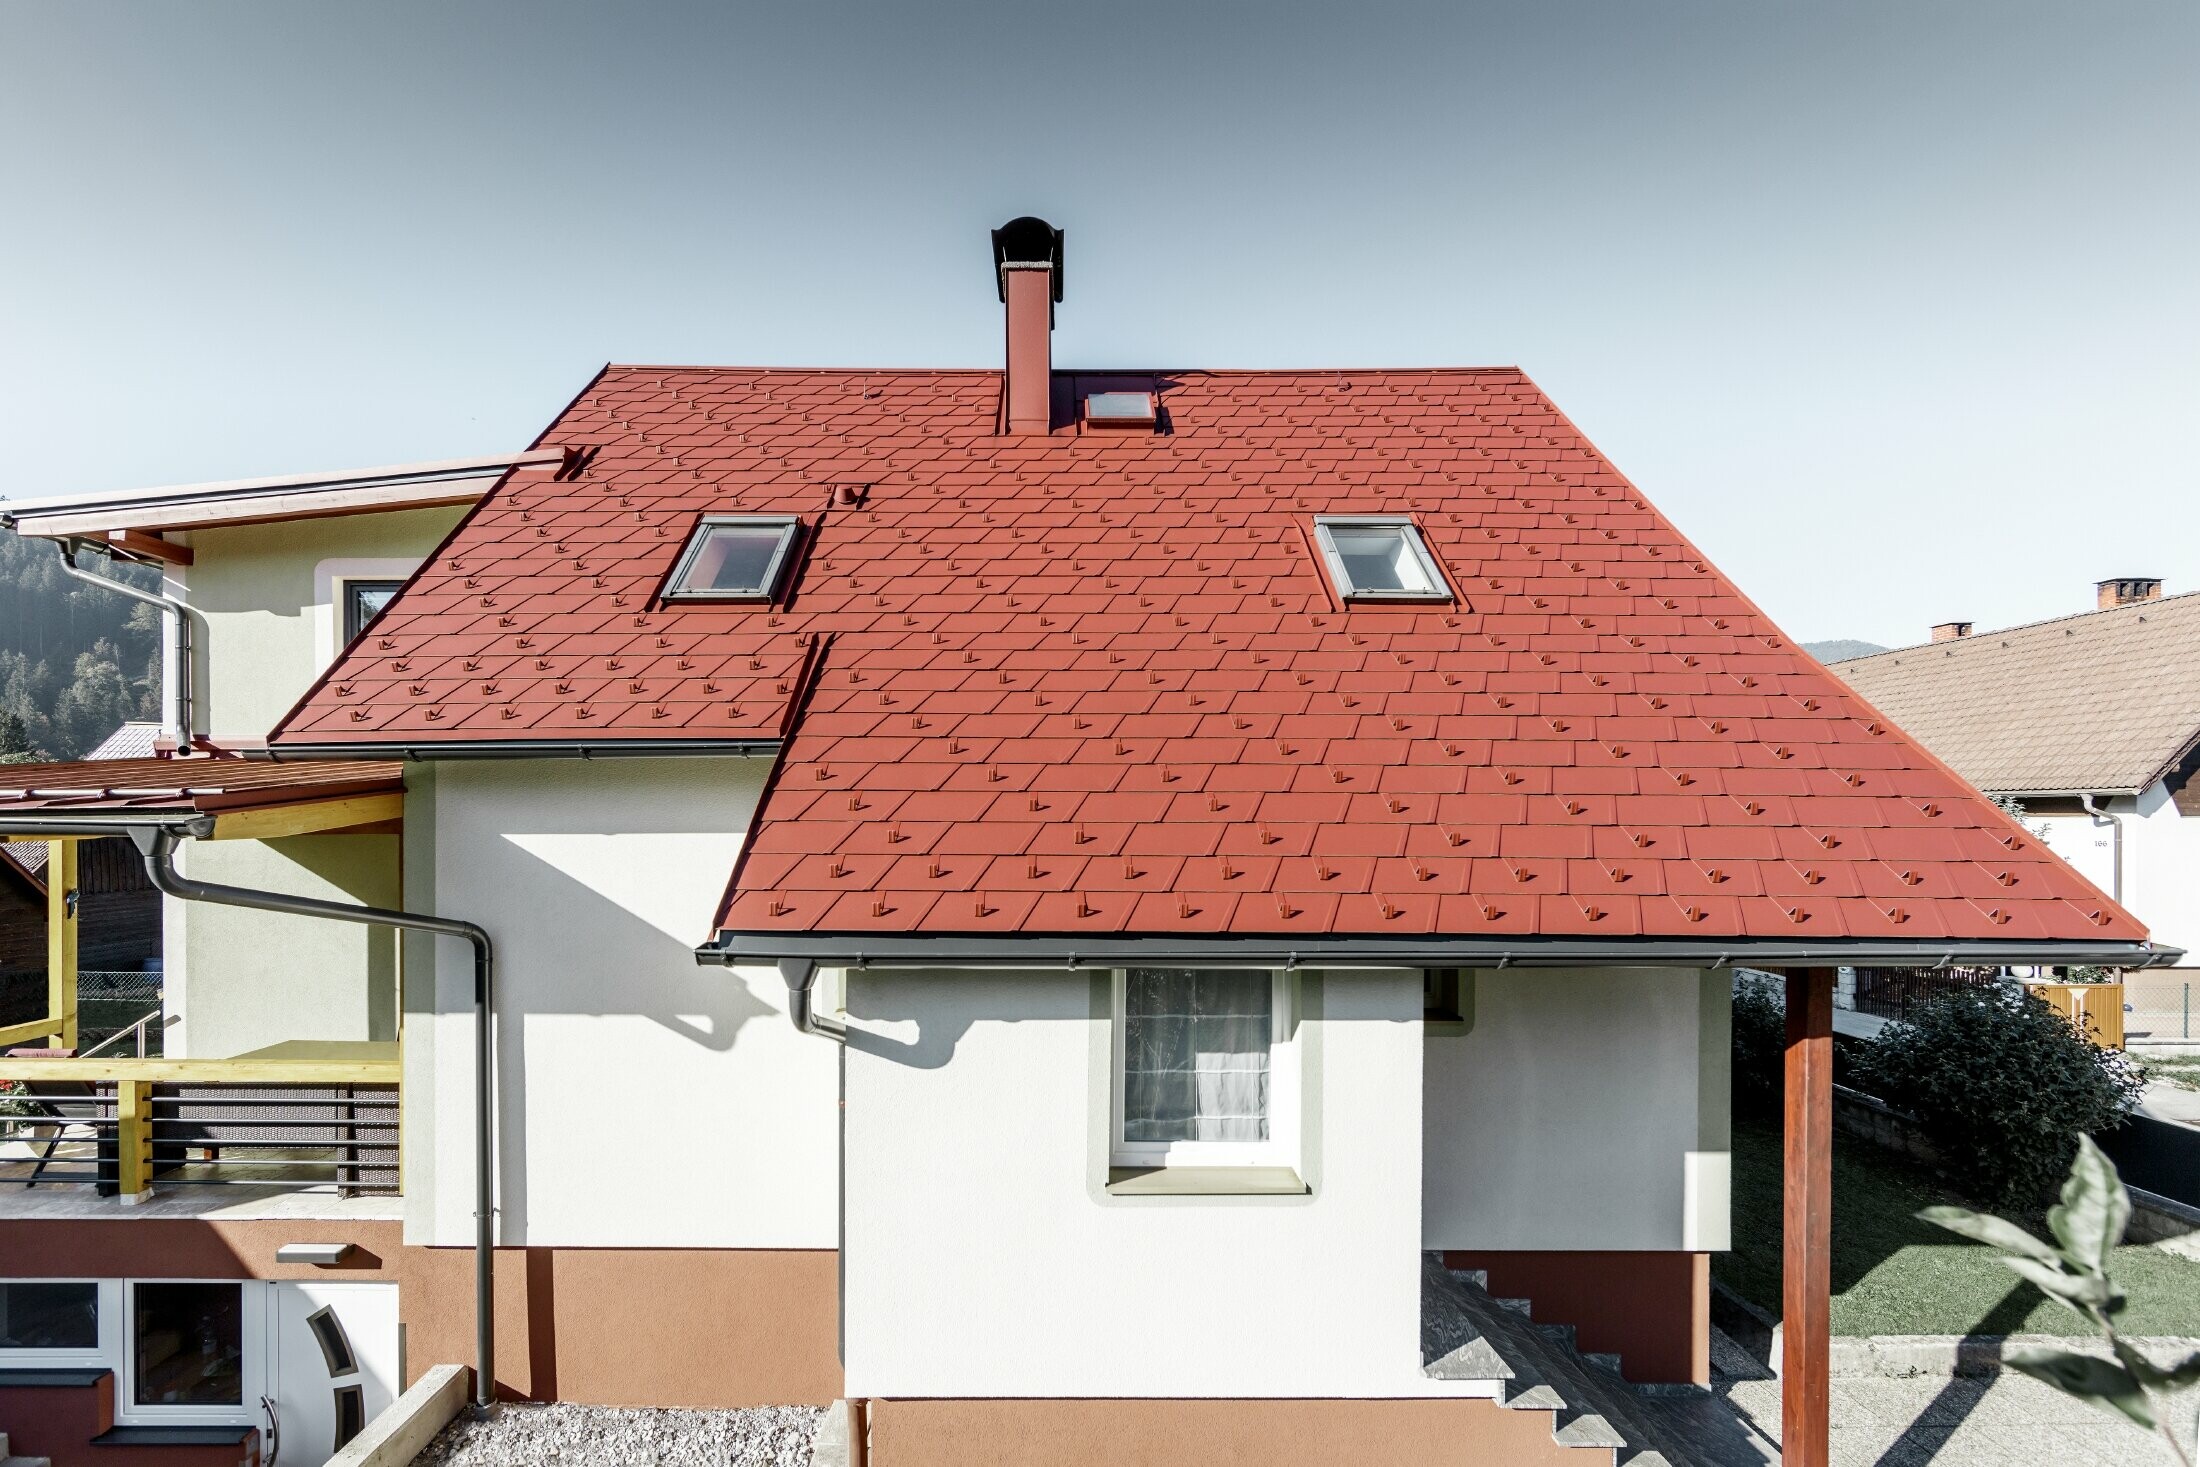 Maison individuelle rénovée avec toiture couverte de bardeaux de toiture PREFA. Le choix s’est porté sur le DS.19 de couleur rouge oxyde.